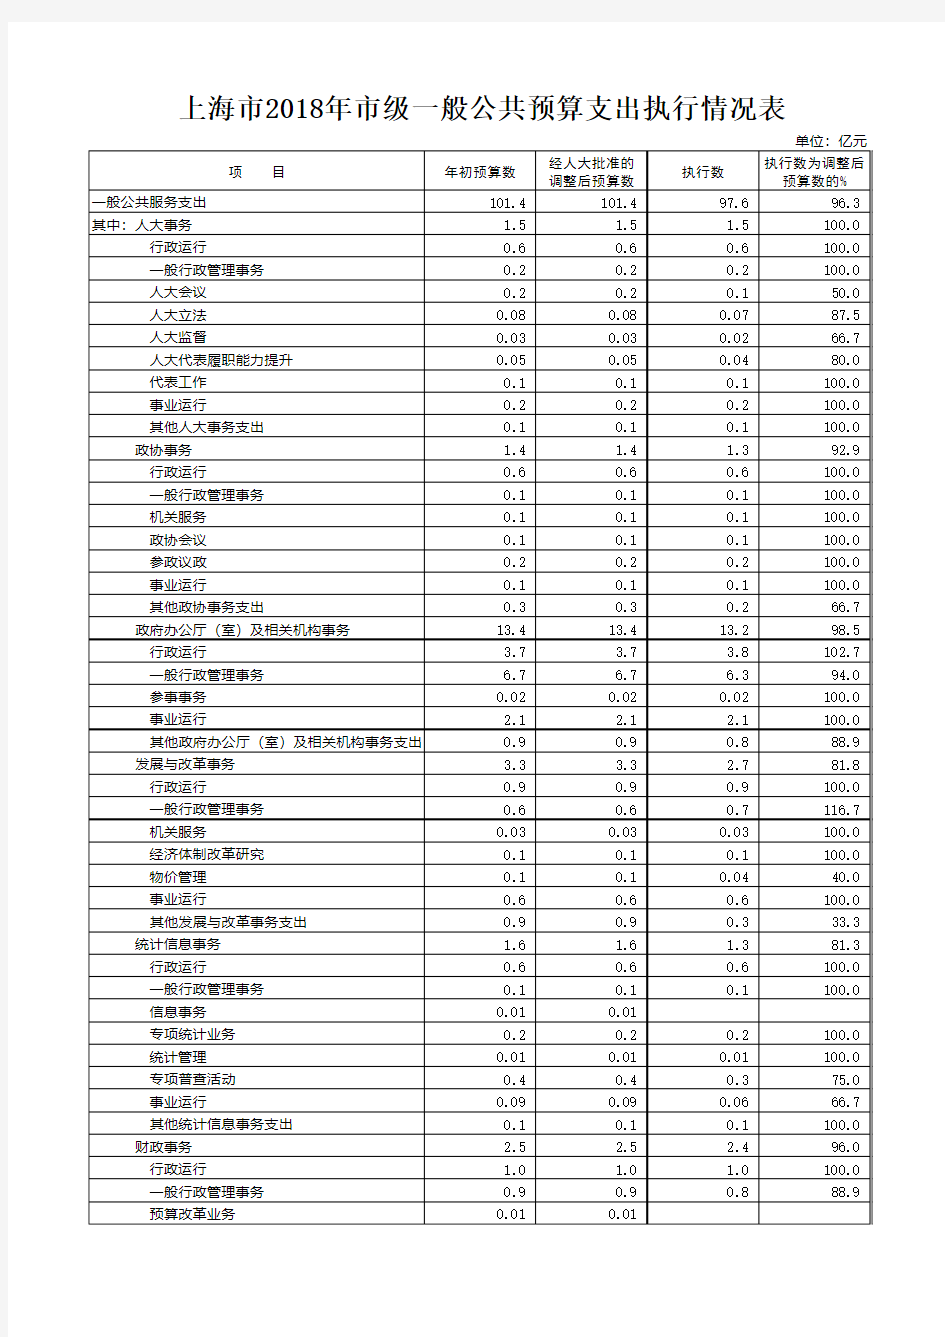 上海市2018年市级一般公共预算支出执行情况表